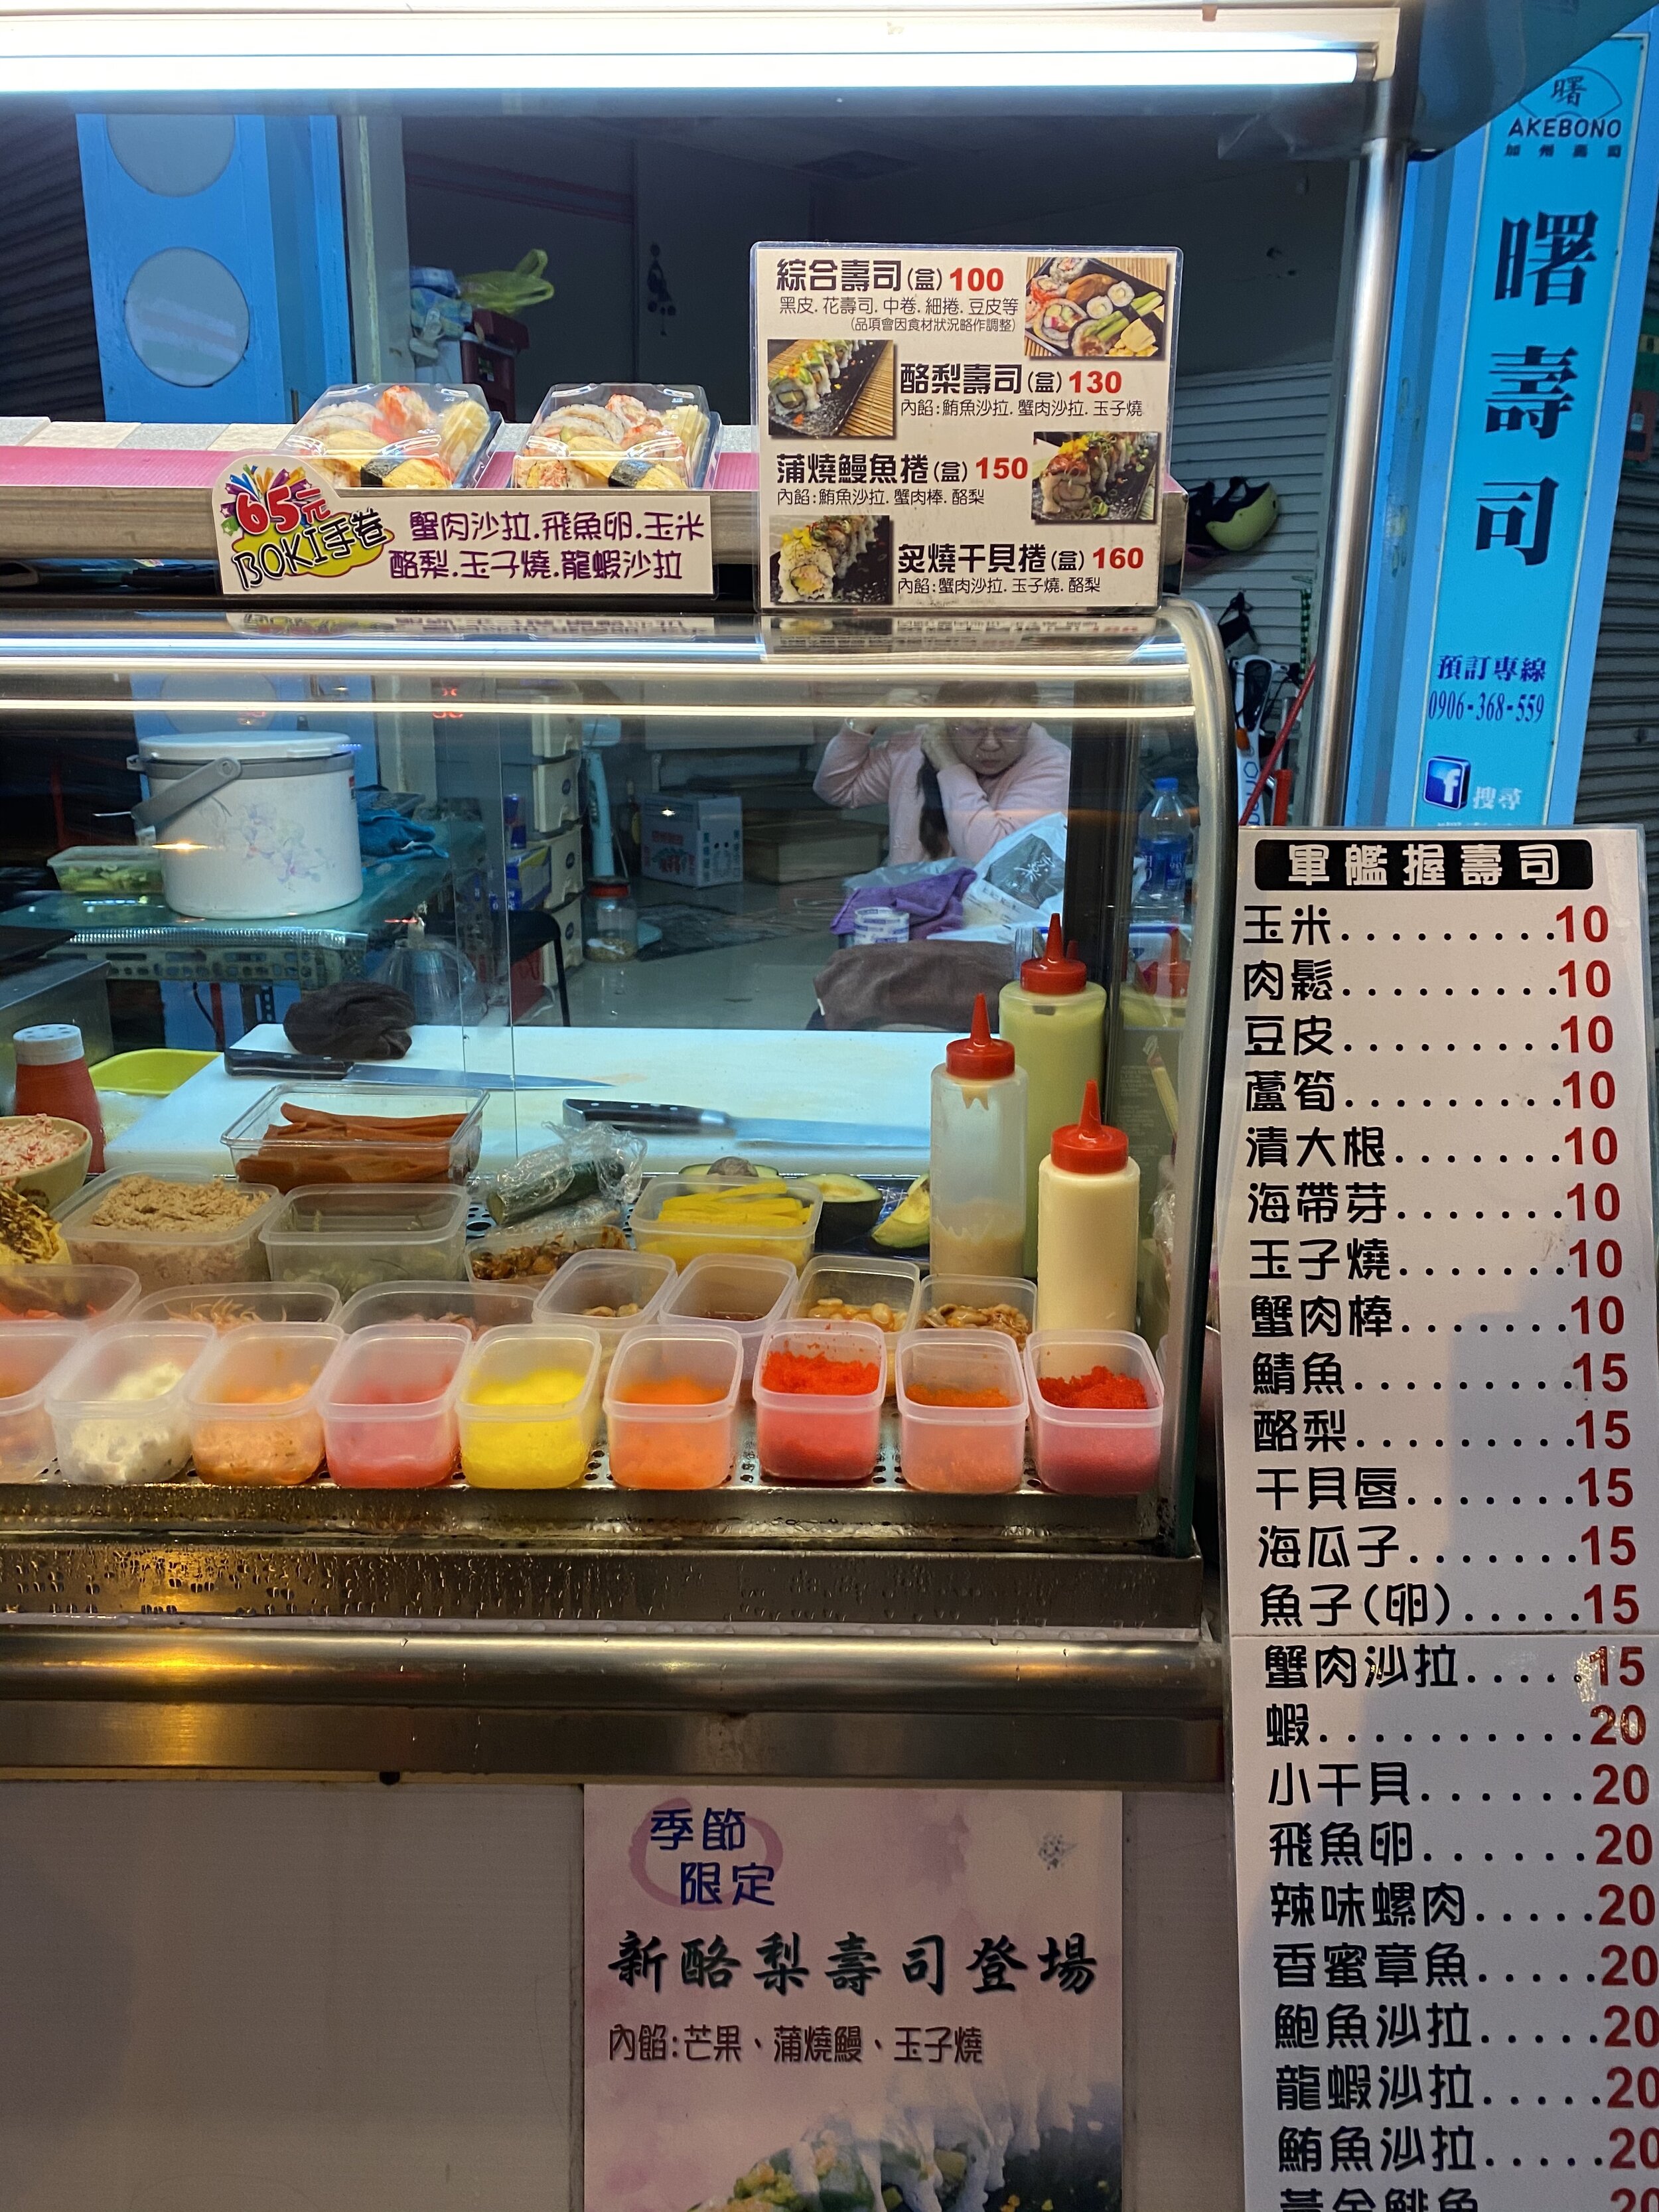 akebono sushi stall